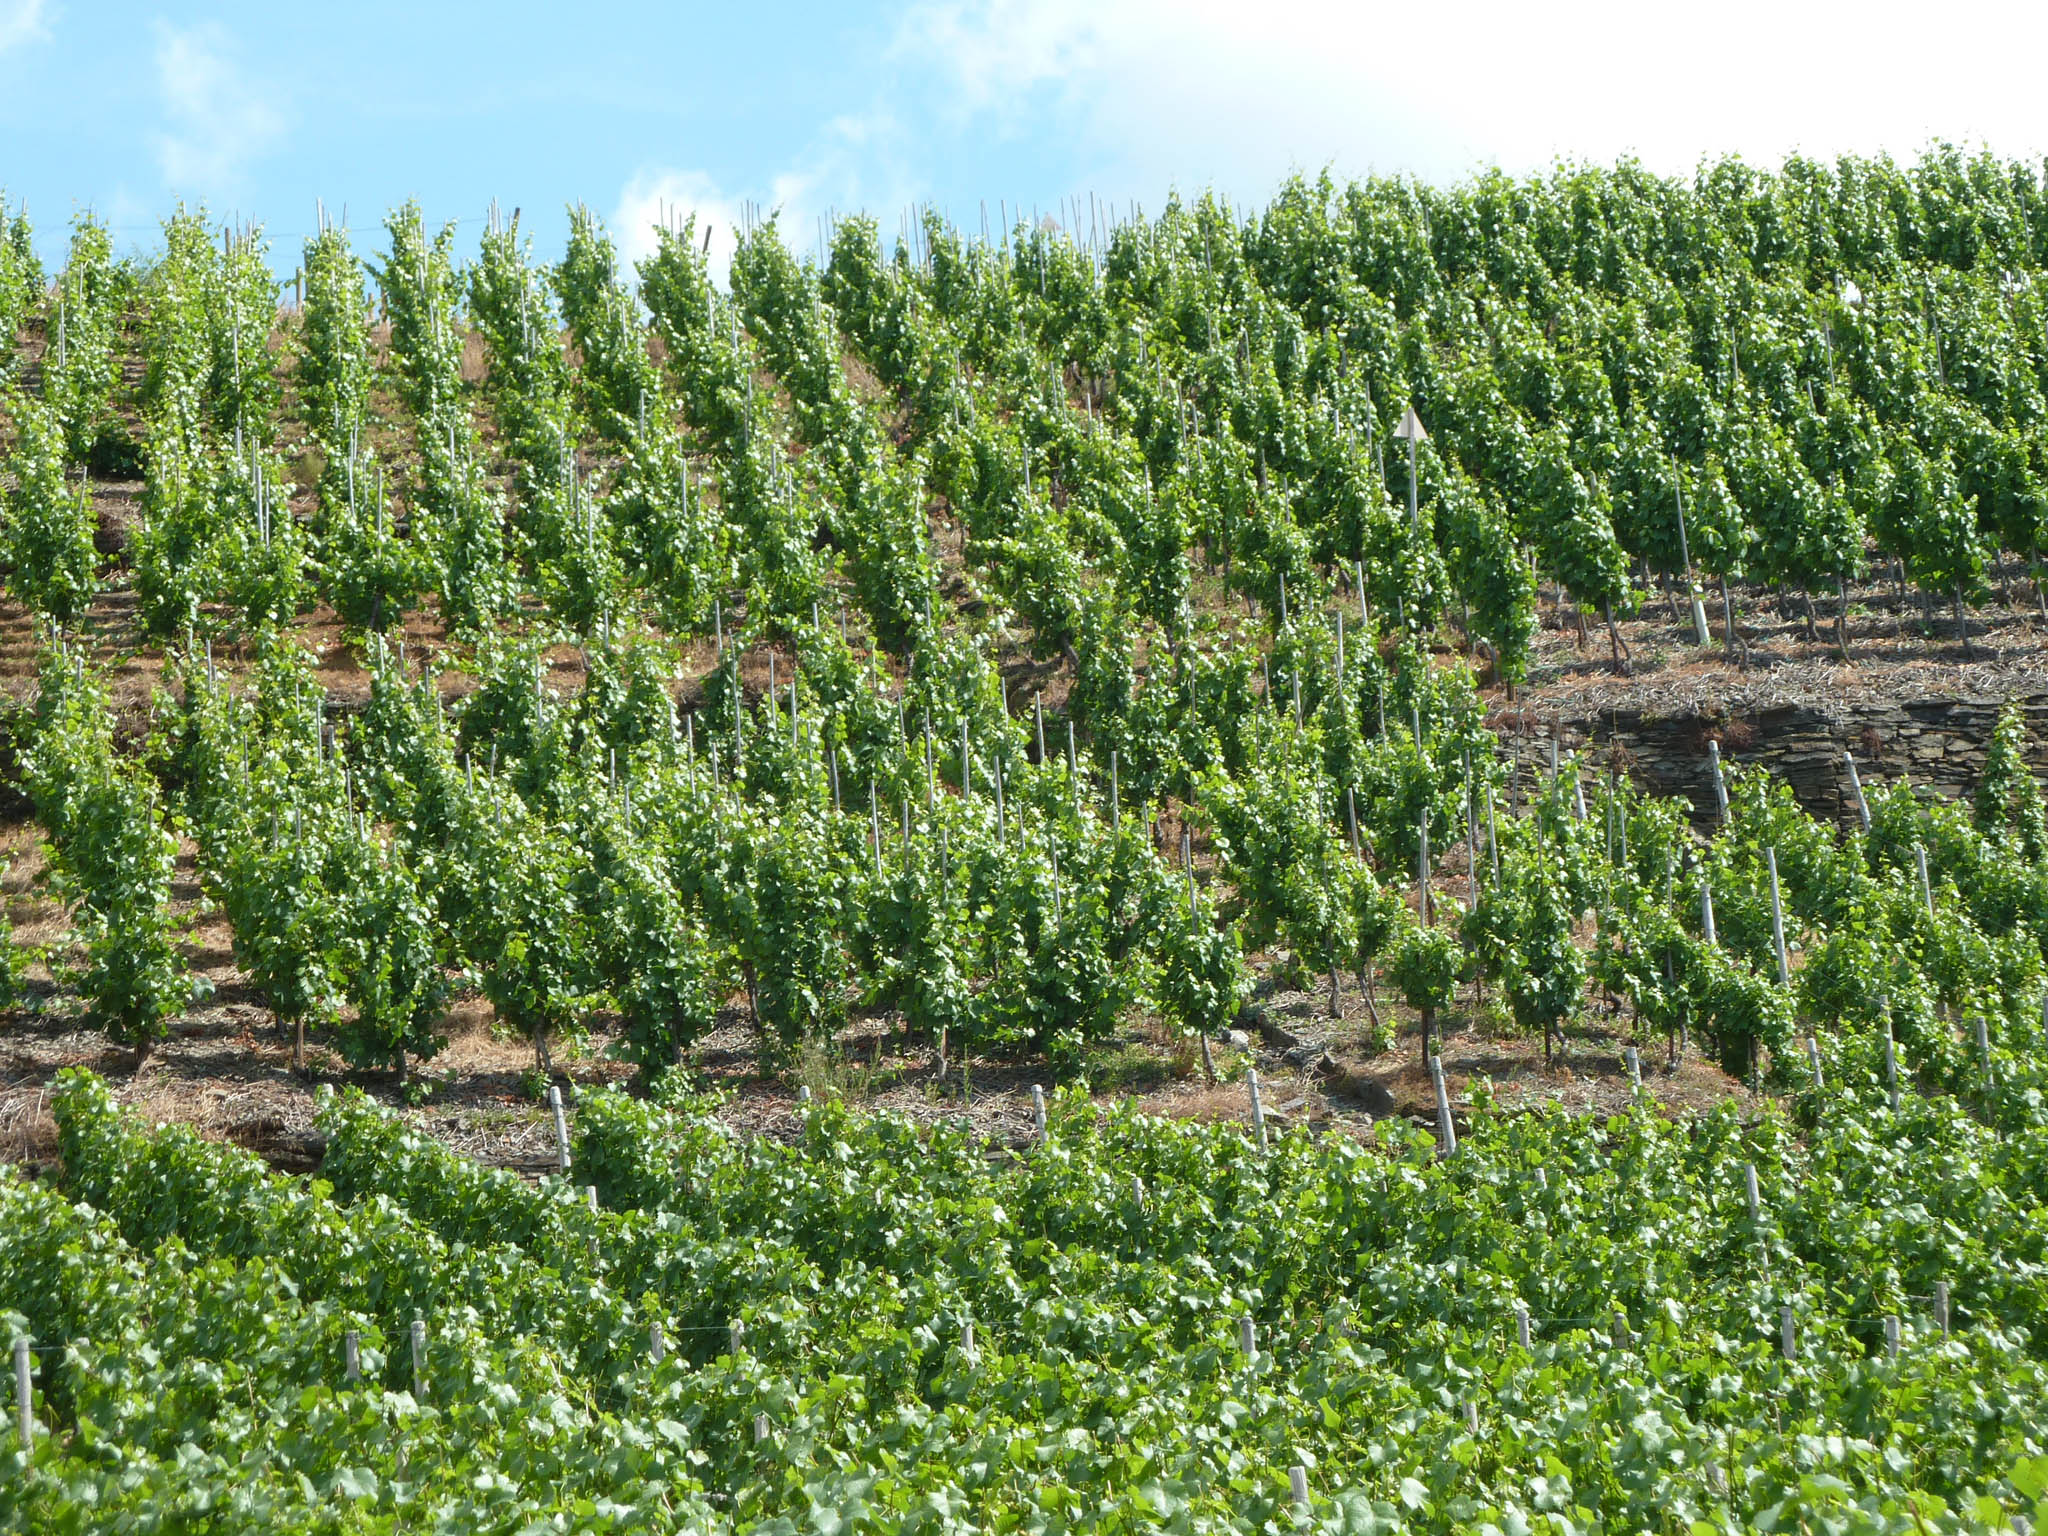 Urlaub in Mayschoß und den international bekannten Wein im Weinkeller geniessen